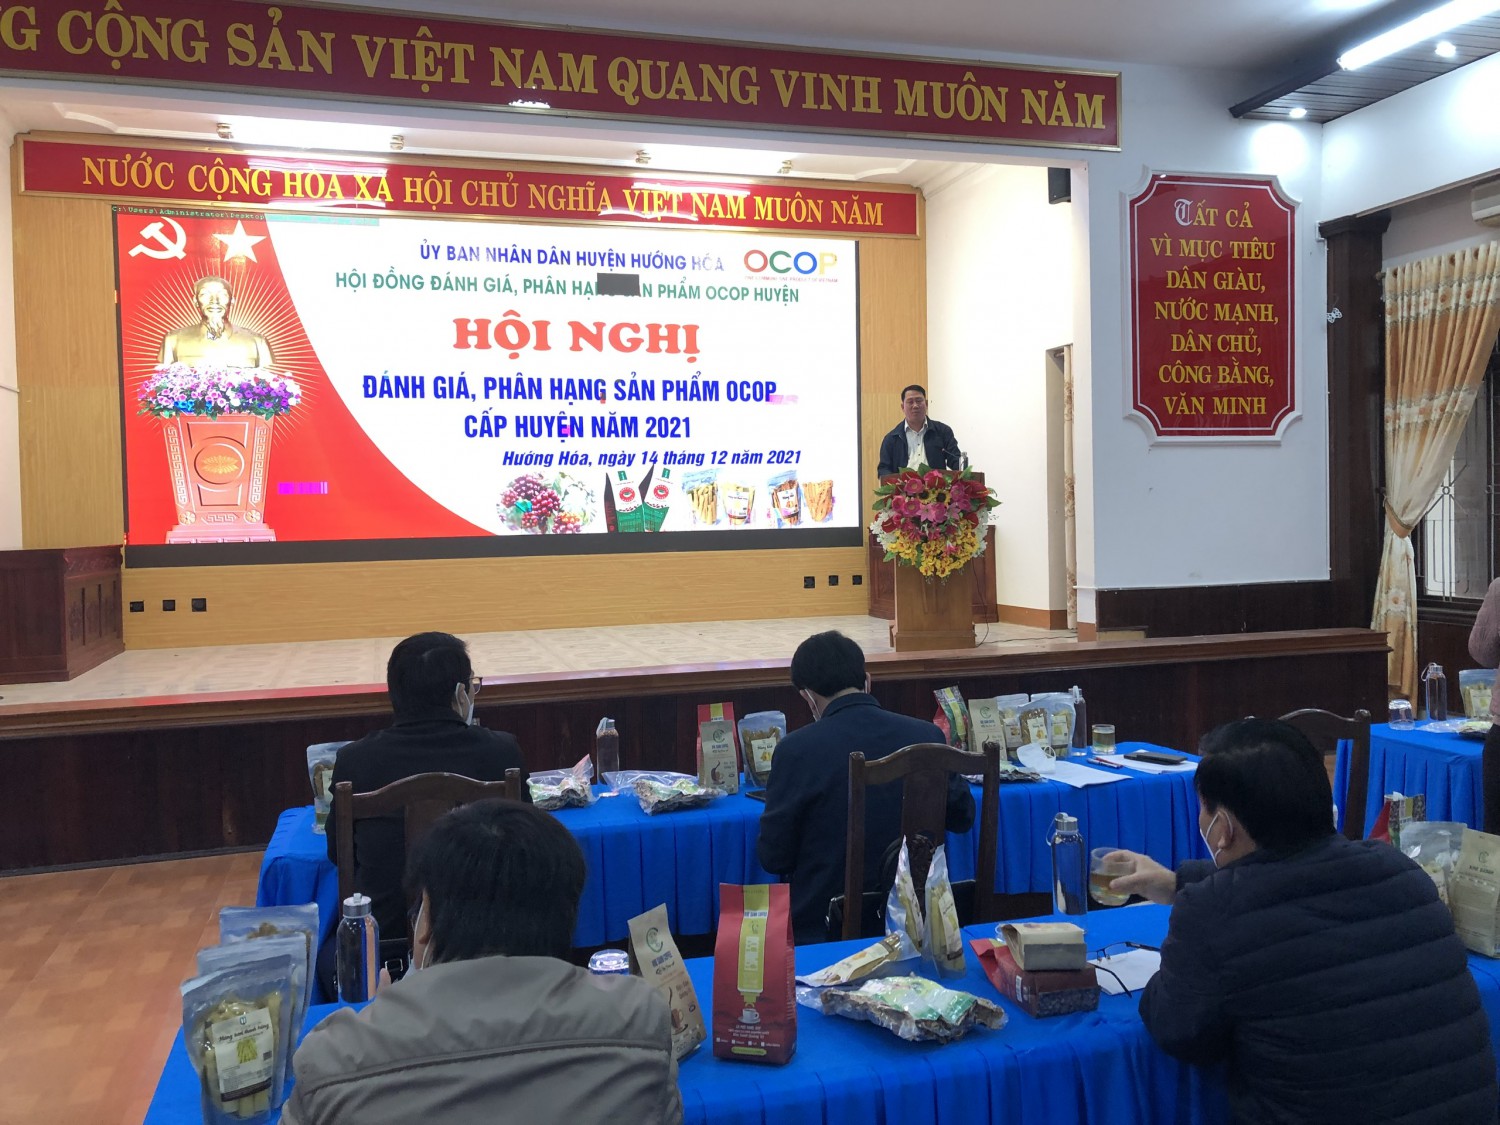 Ông Lê Quang Thuận, UVBTV Huyện ủy, Phó Chủ tịch UBND huyện, Chủ tịch Hội đồng đánh giá, phân hạng sản phẩm OCOP huyện phát biểu tại hội nghị